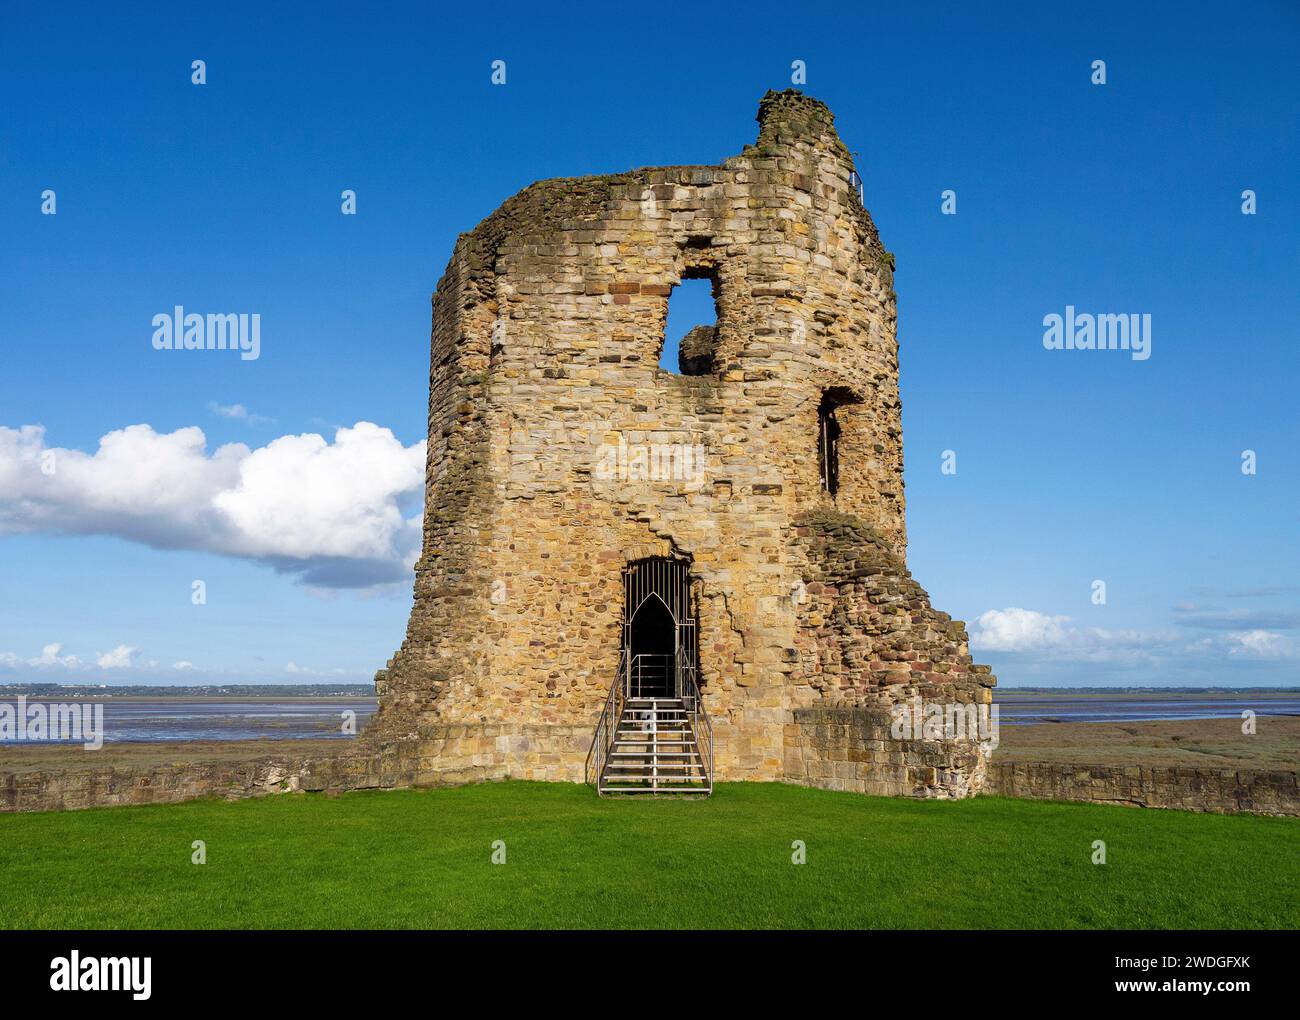 Torre de esquina oriental de tres pisos en ruinas del castillo de Flint en un día soleado, con vistas a través del estuario de Dee hacia Inglaterra; Flint, Flintshire, Gales Foto de stock